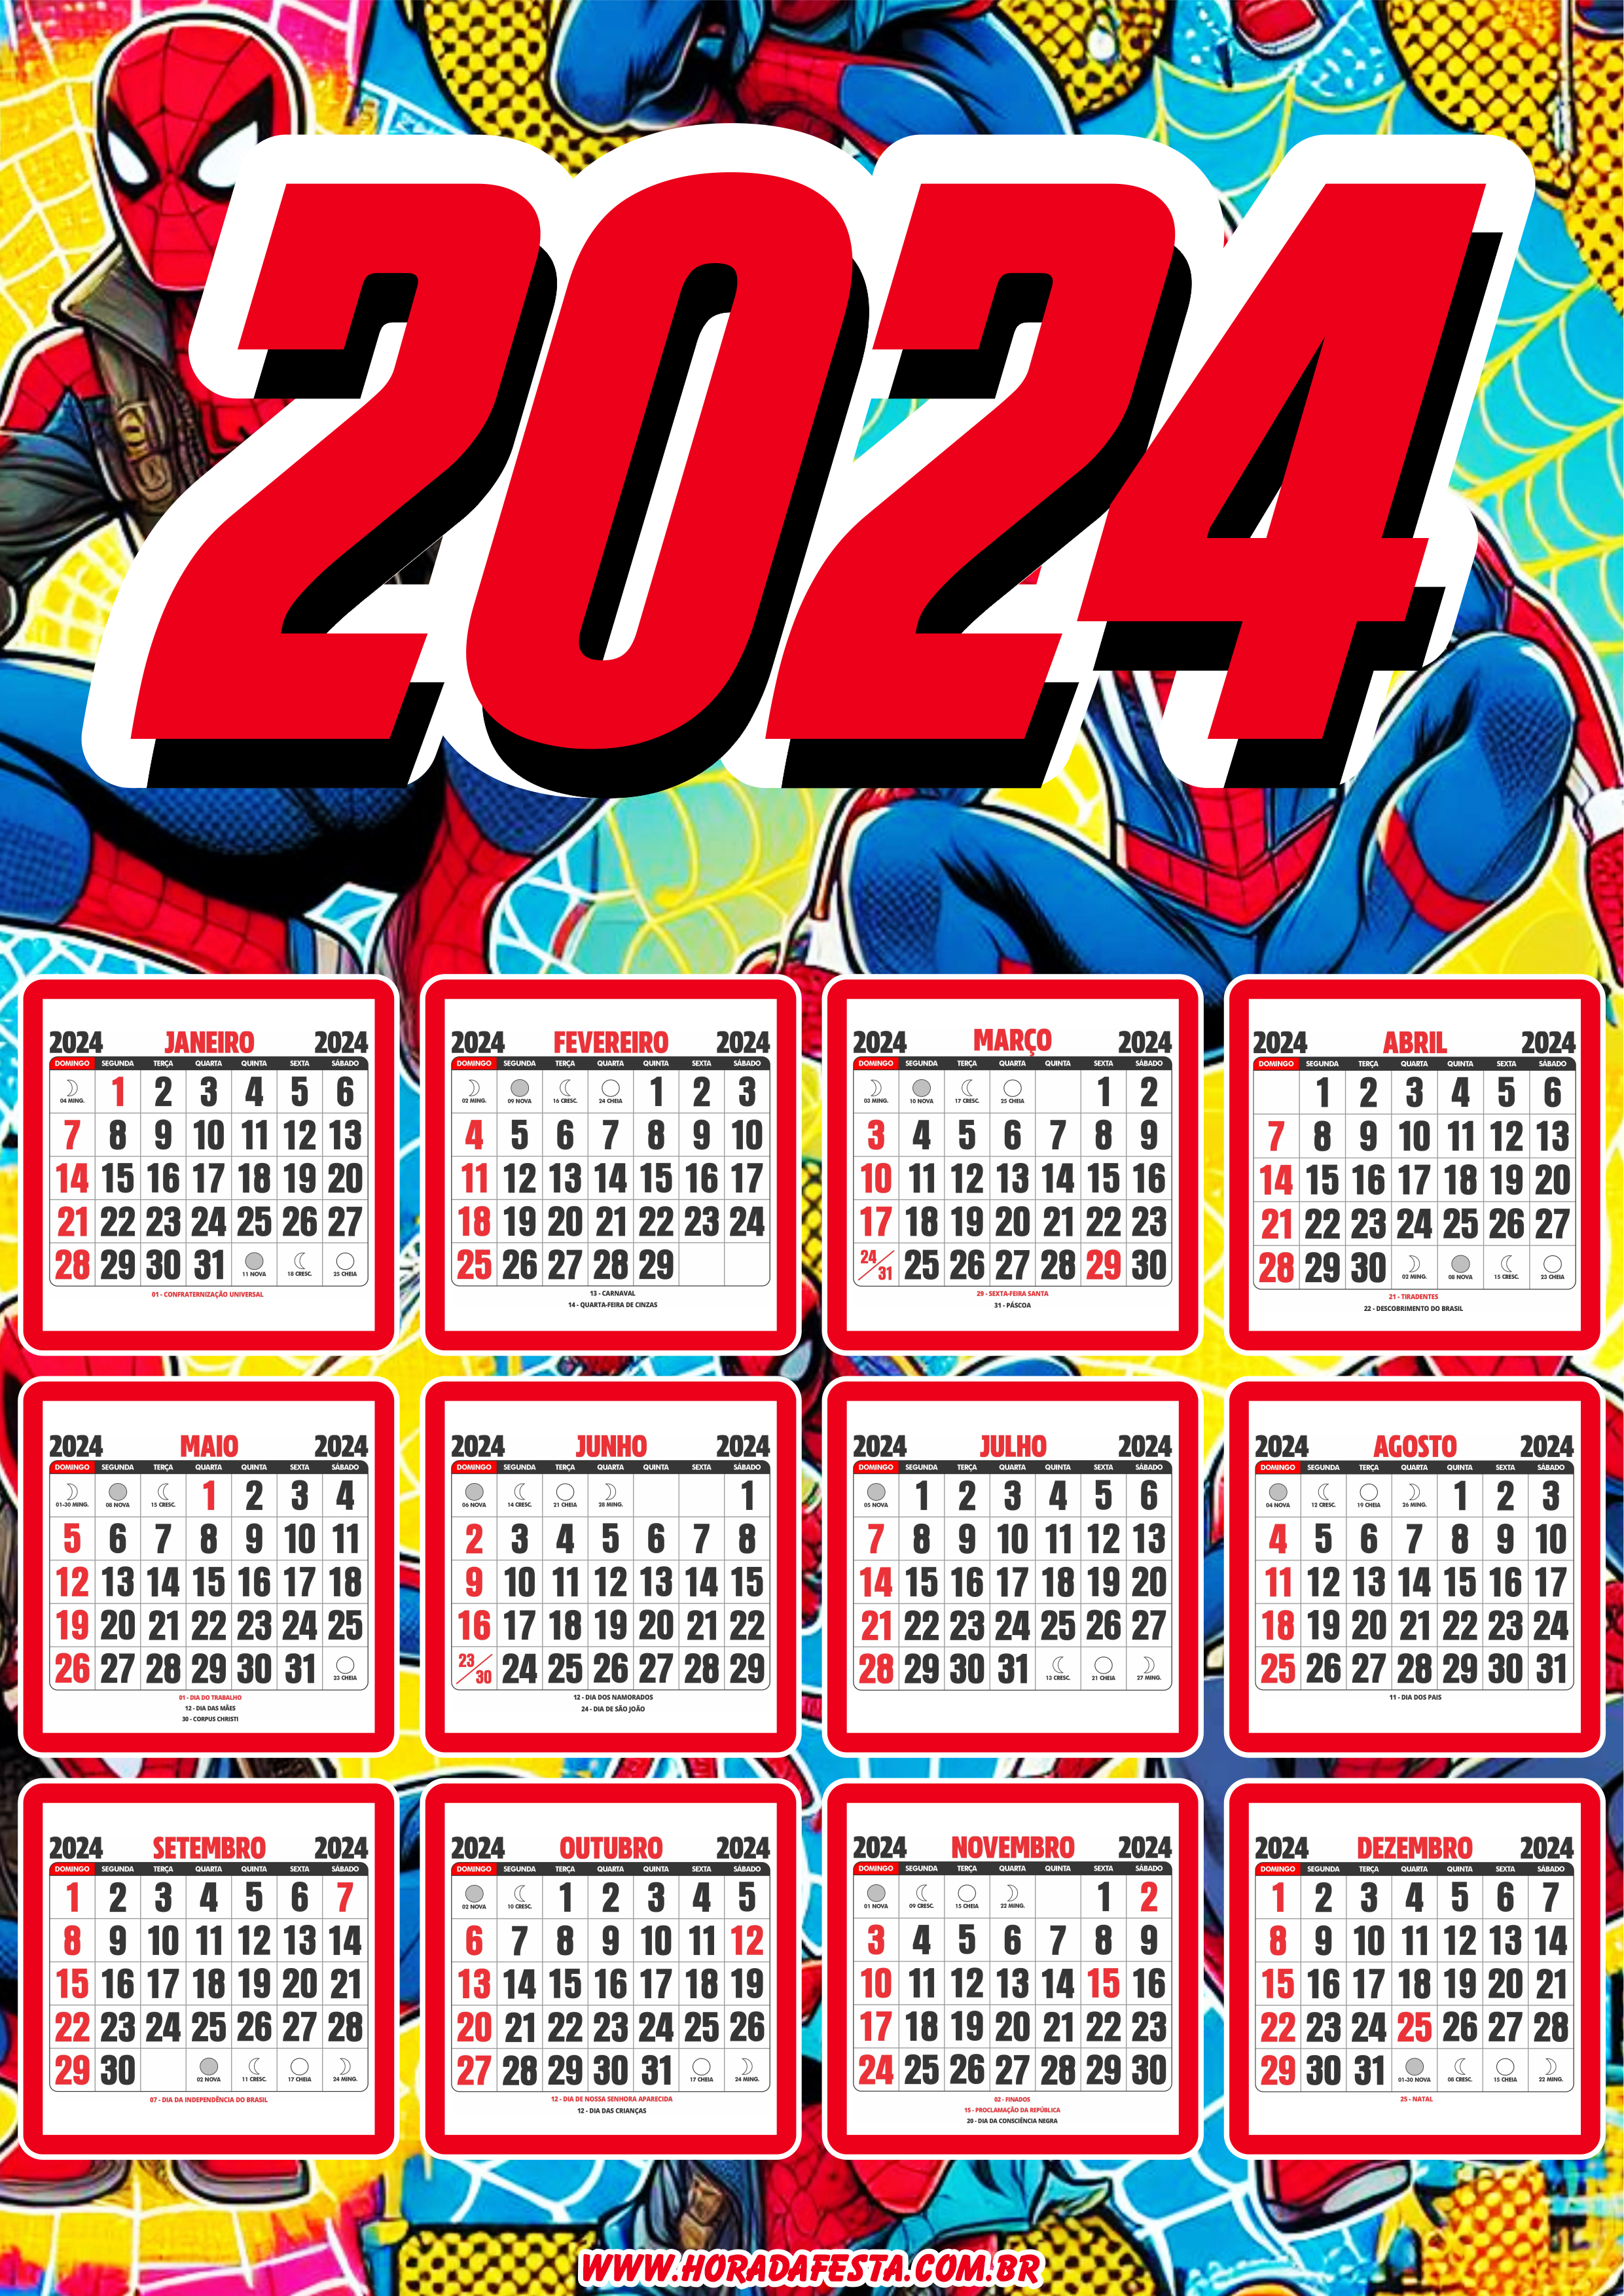 Calendário 2024 personalizado homem aranha png